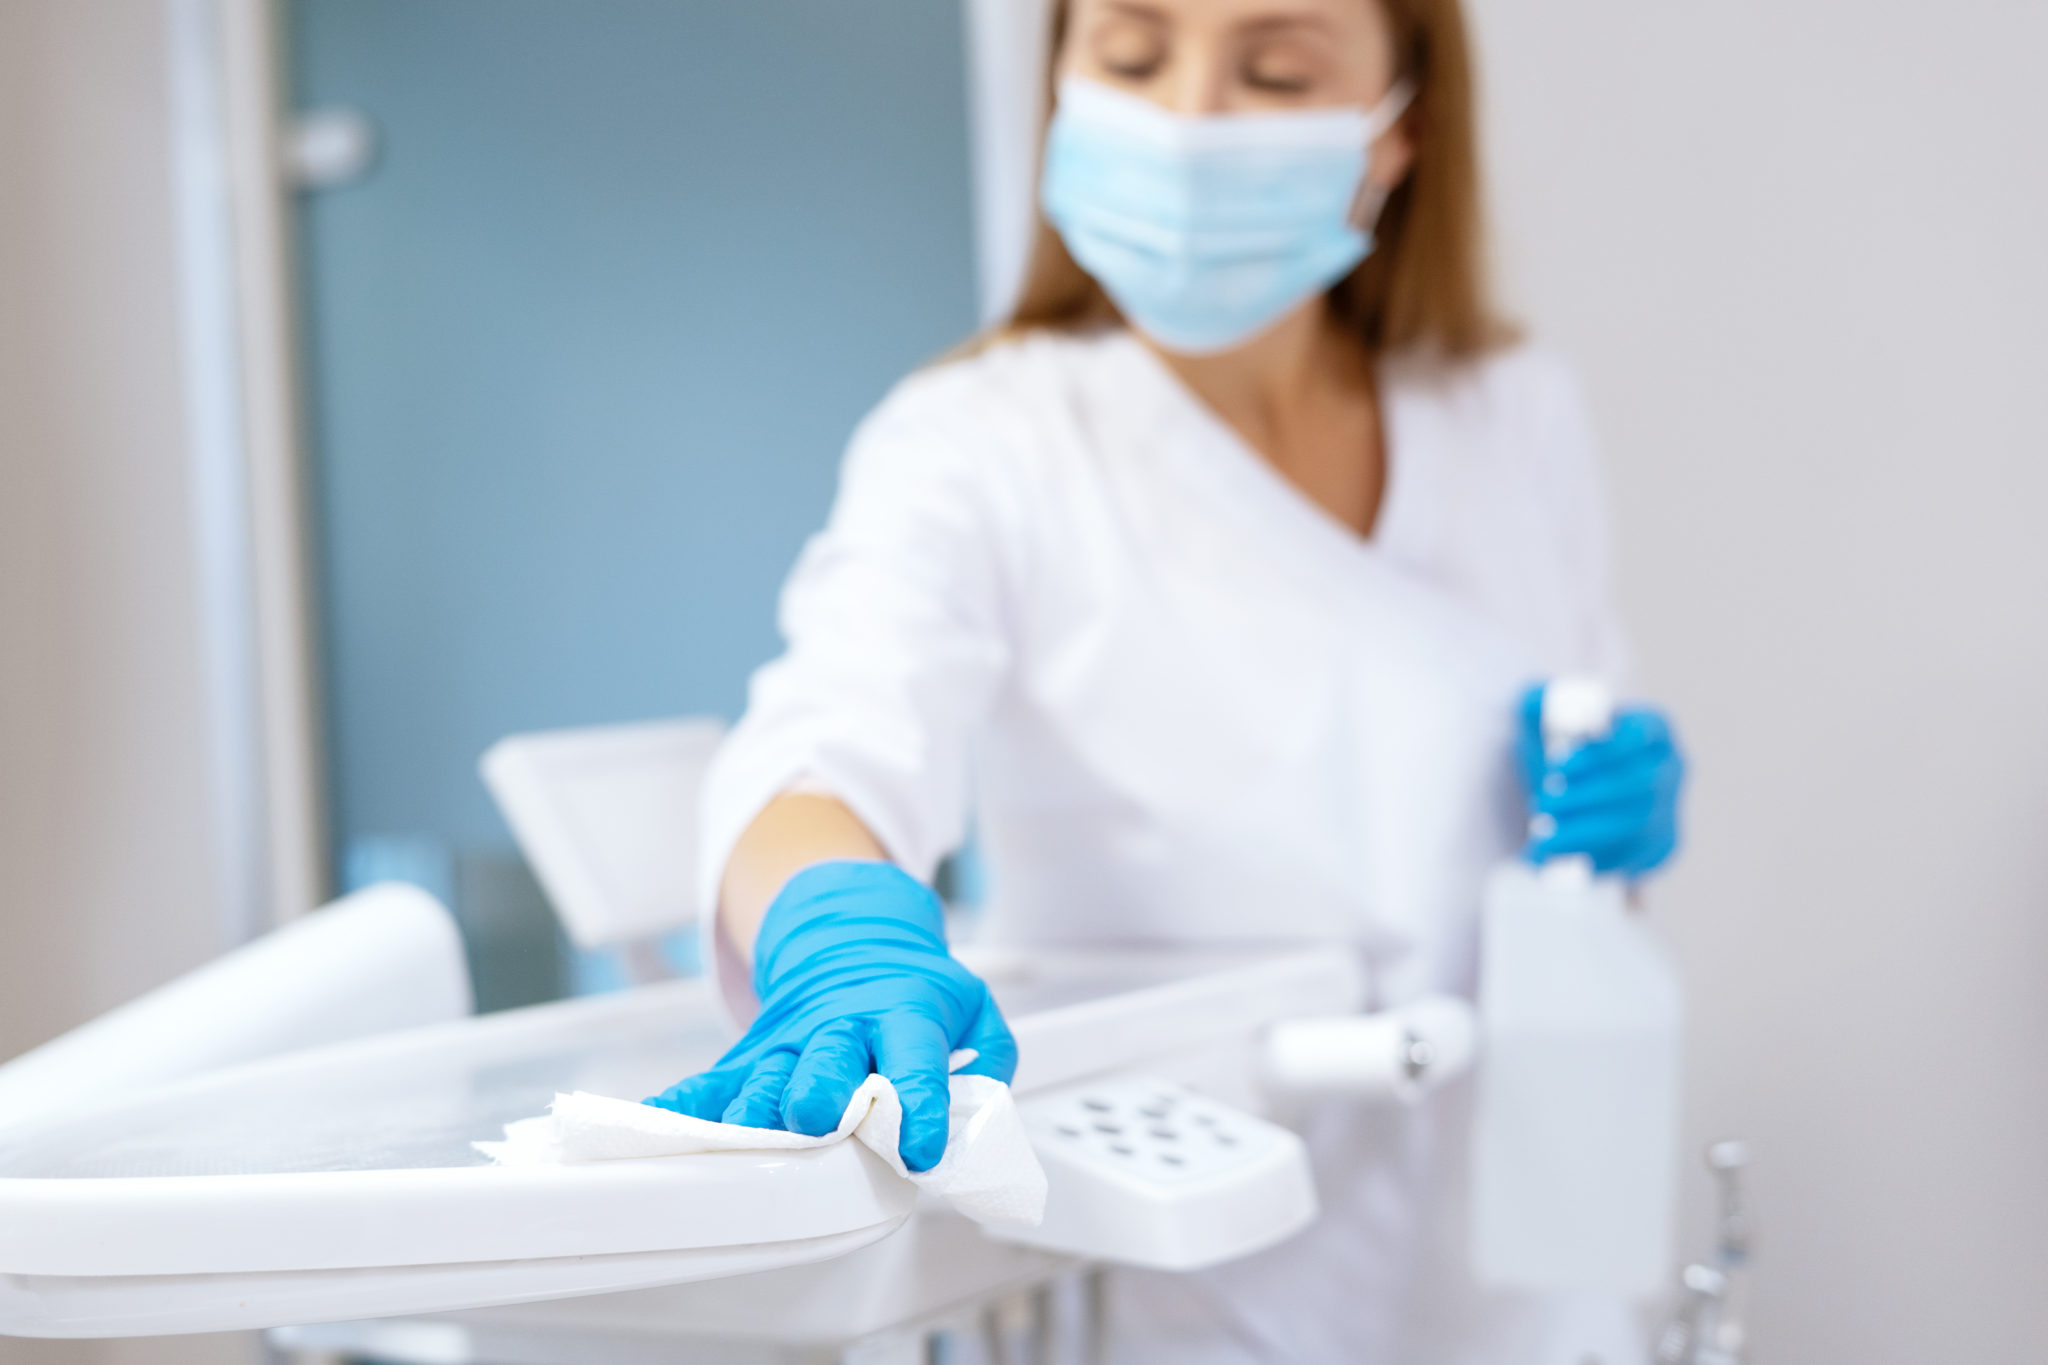 Dentist Sanitizing Equipment